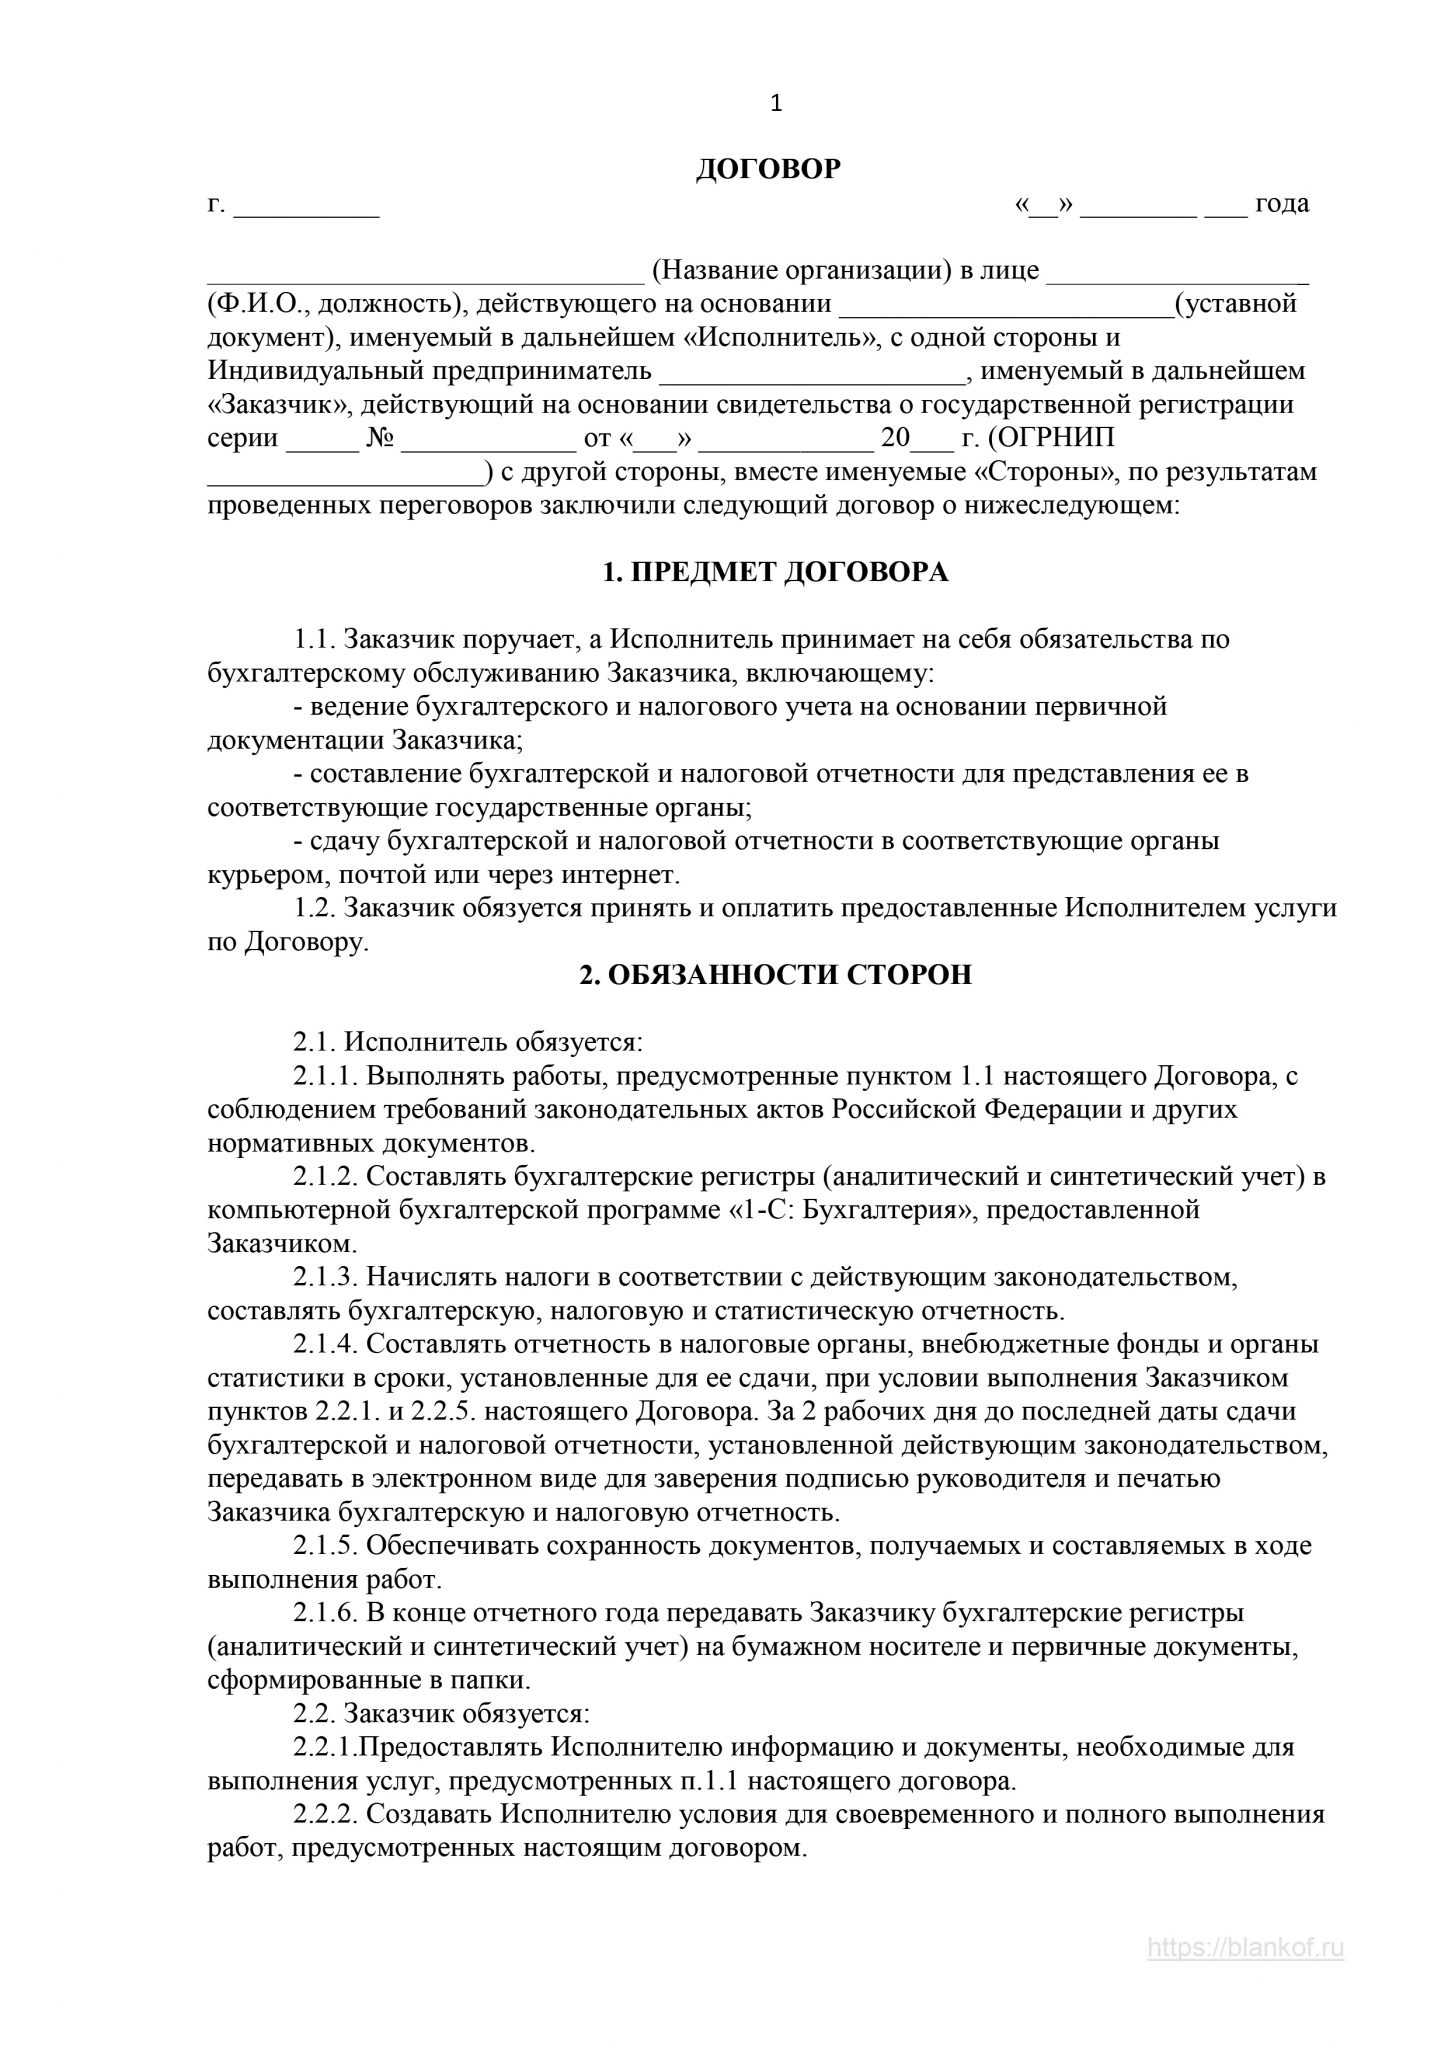 Договор на оказание бухгалтерских услуг образец украина